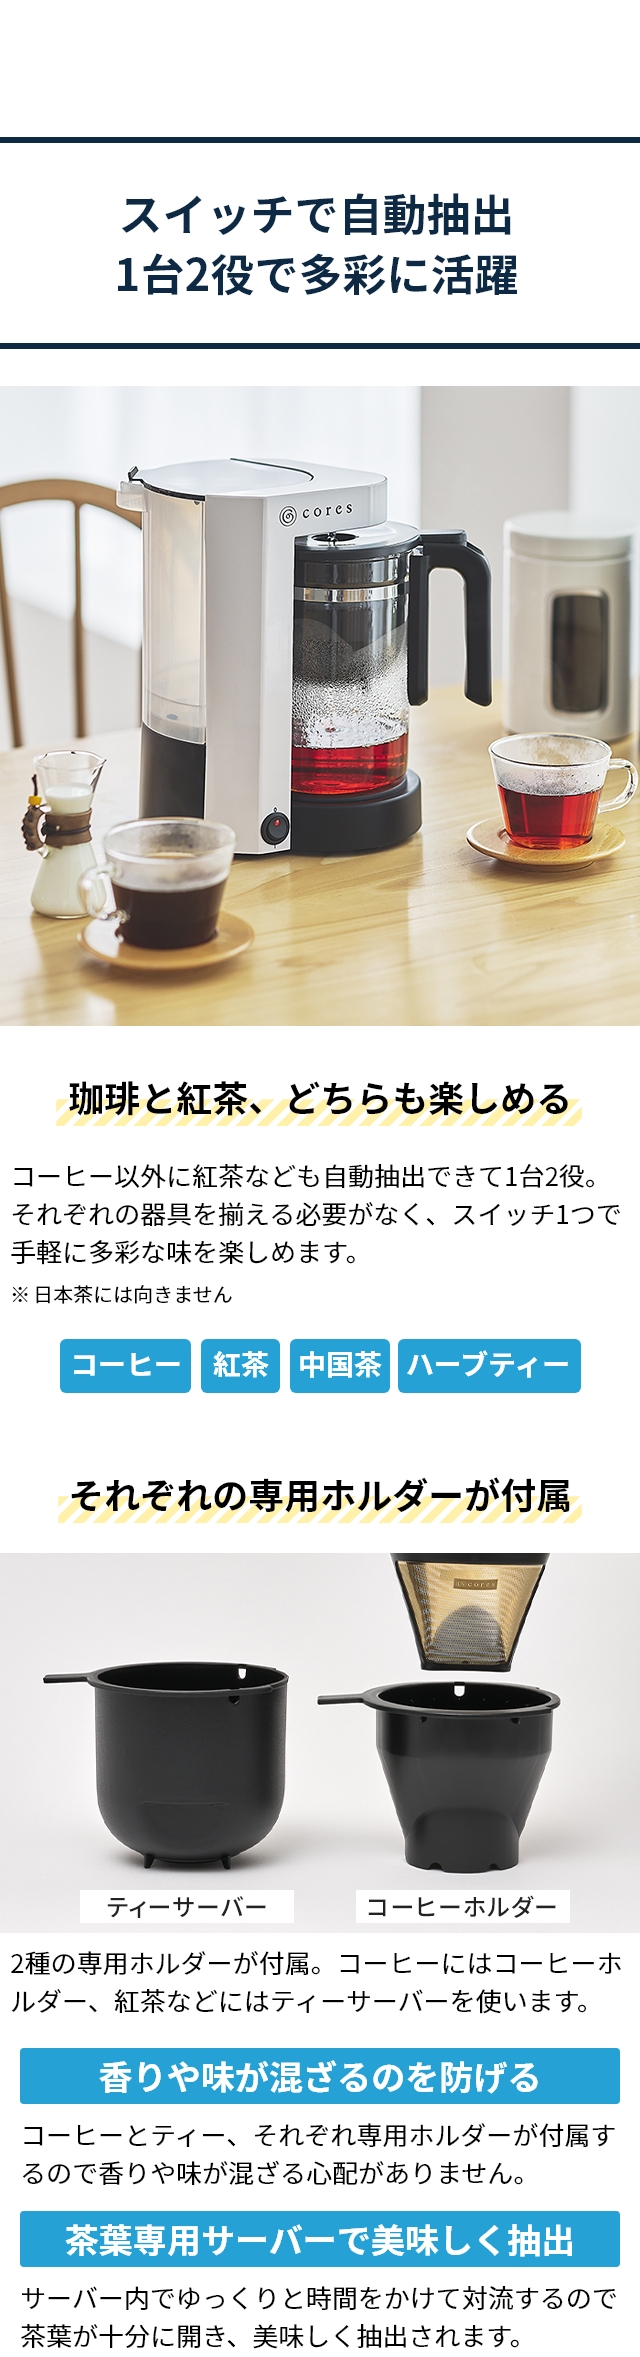 コレス 【選べる特典付】 コーヒーメーカー 5カップコーヒーメーカー